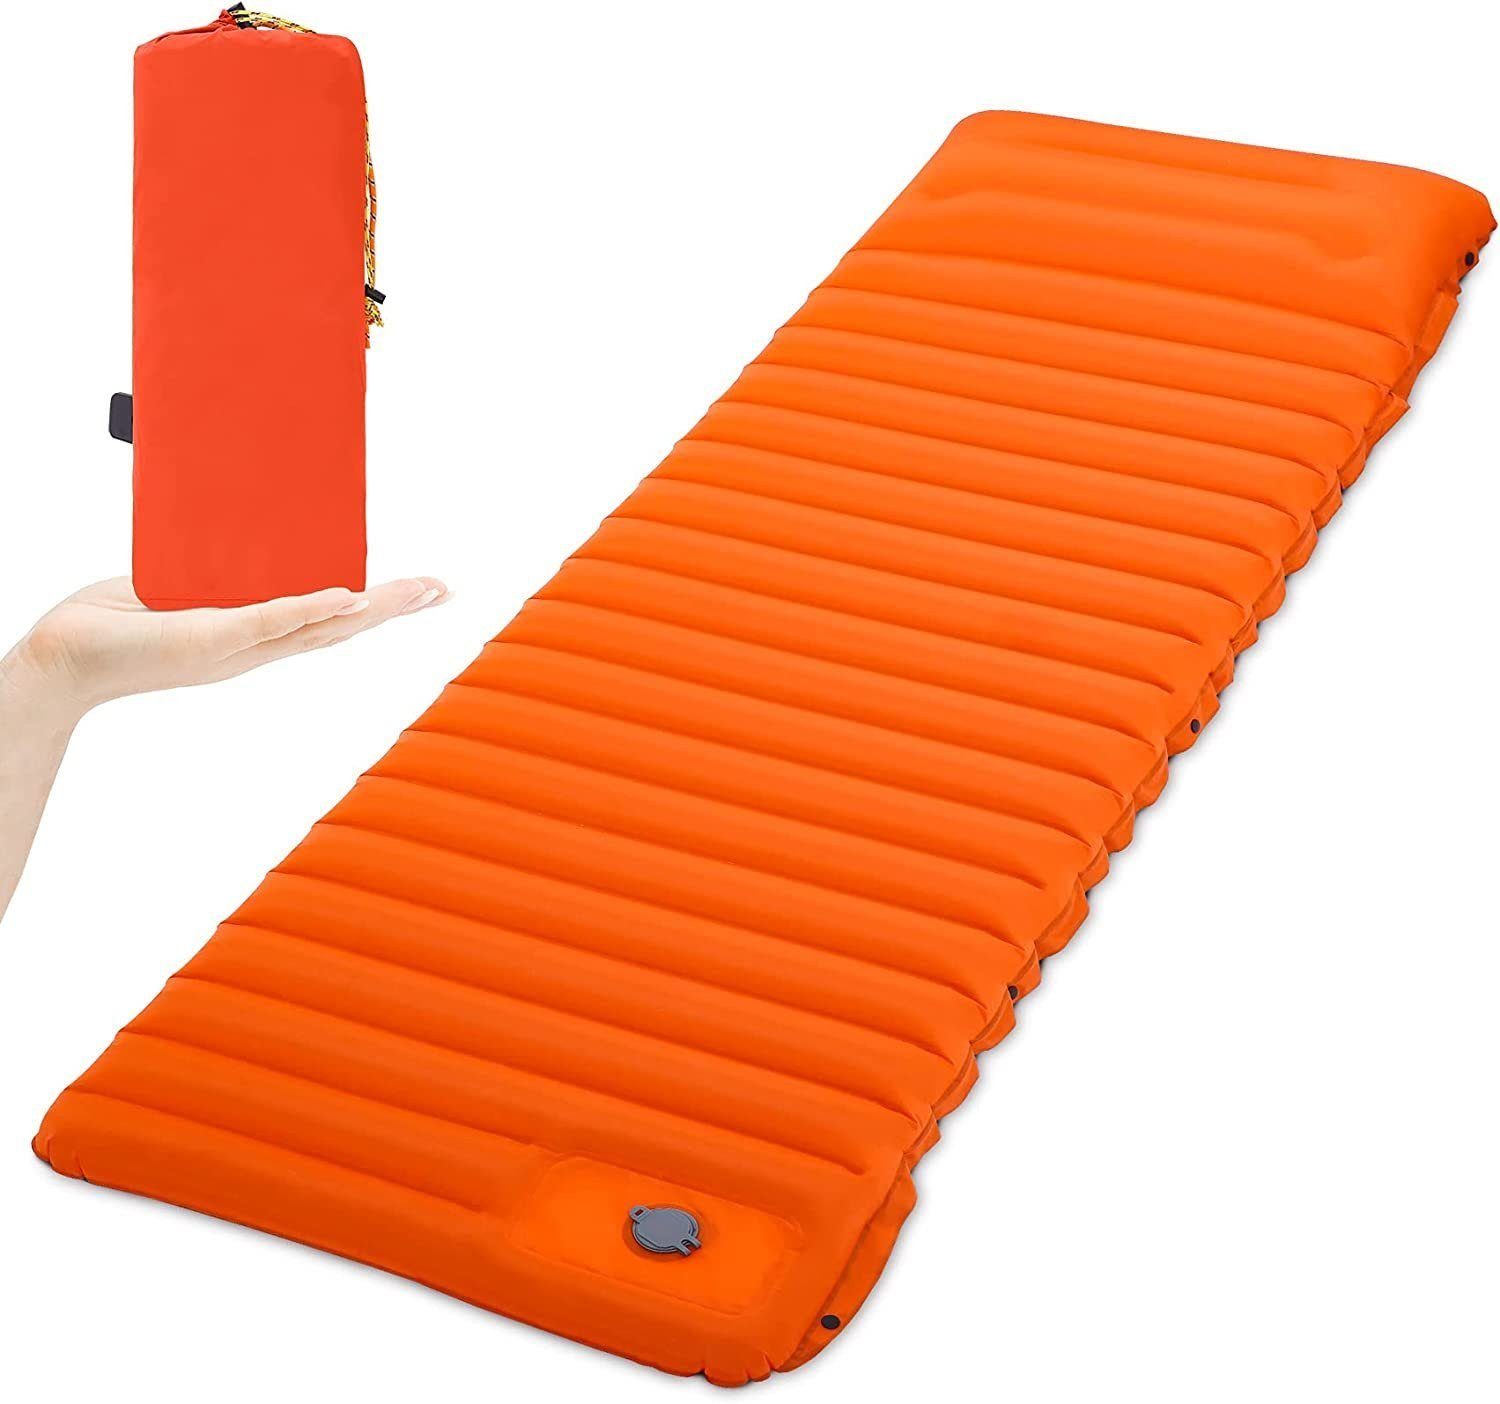 SOTOR Isomatte Camping Isomatte Outdoor Matratze Orange aufblasbare Matratze, mit Fußdruckpumpe,10CM,Selbstaufblasend Wasserdicht Schlafmatte.